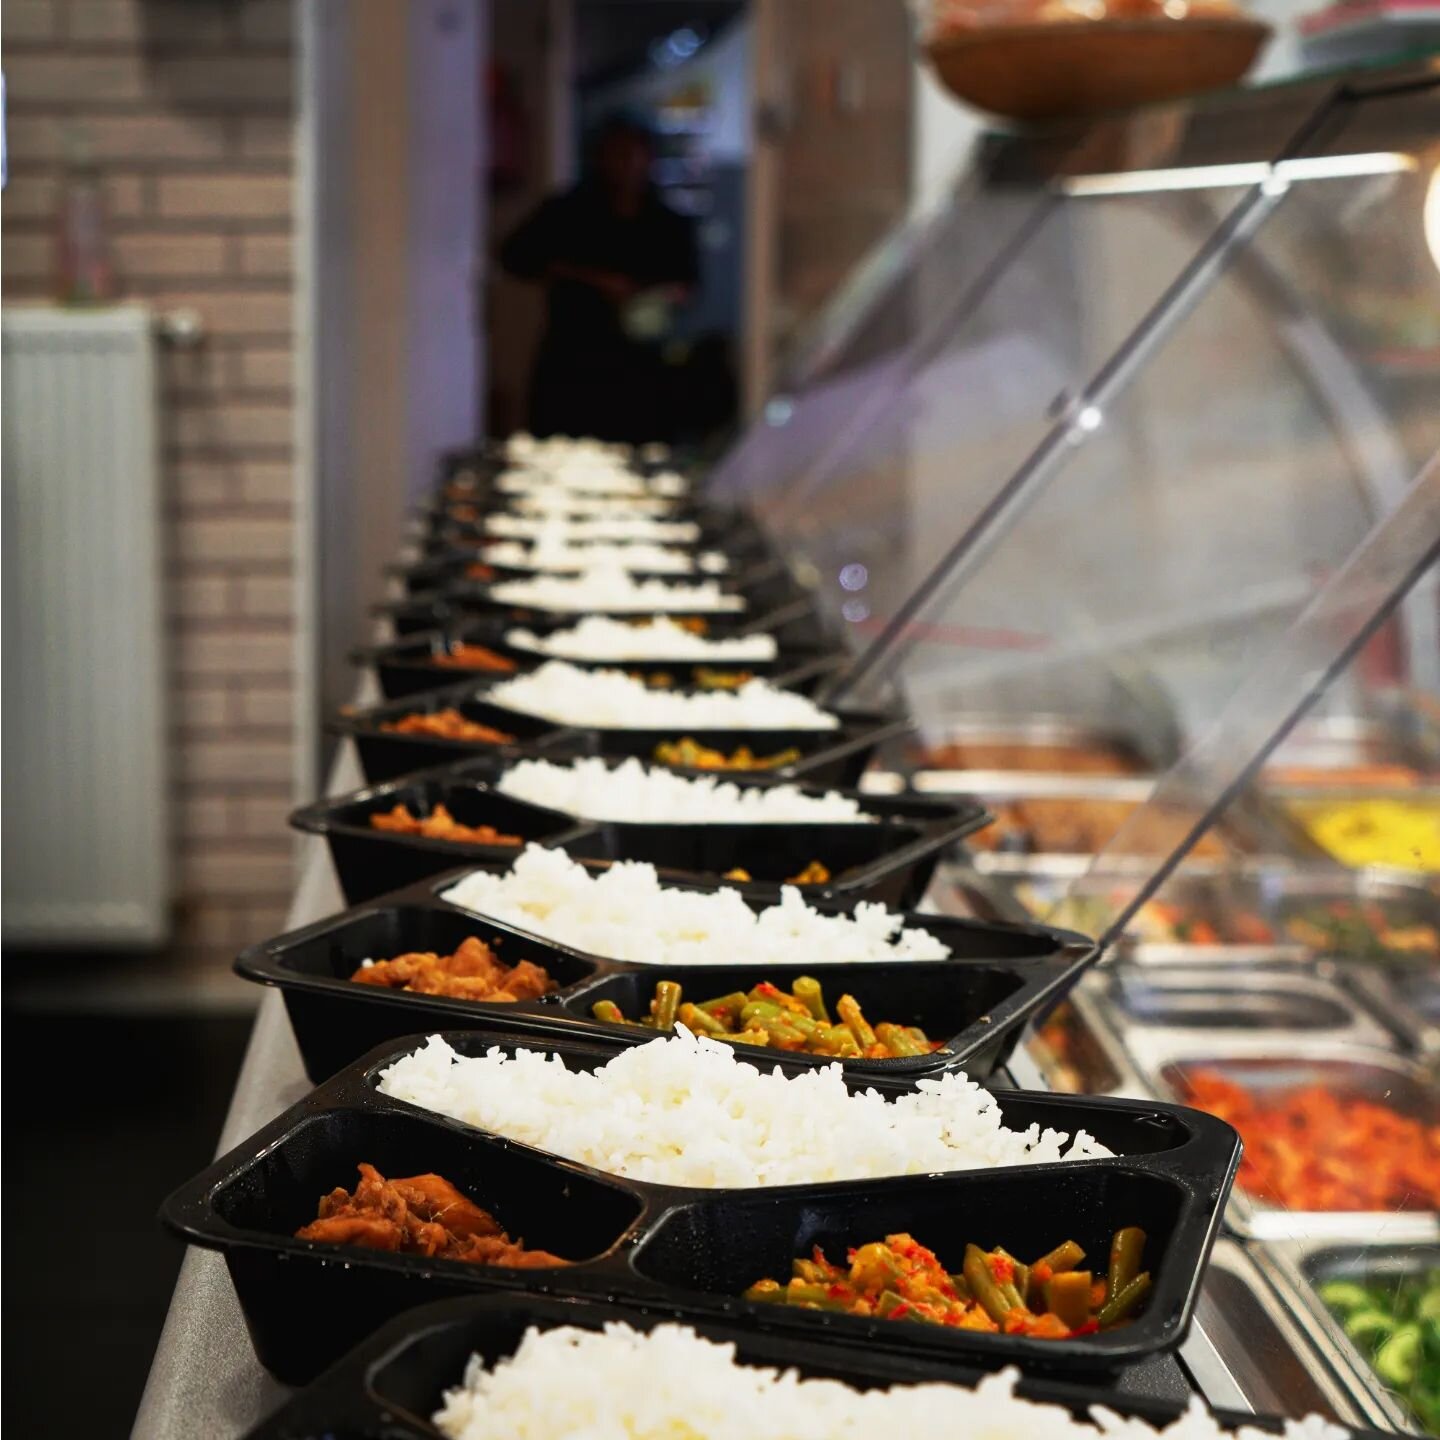 #lunch bij ONI OKI
.
.
.
#onioki #onioki013 #tilburg #tilburg013 #tilburgfood #tilburgcity #toko #afhaal #afhalen #berkdijksestraat #indonesischeten #indonesischekeuken #authentiek #traditioneel #indonesie #indonesia #indonesianfood